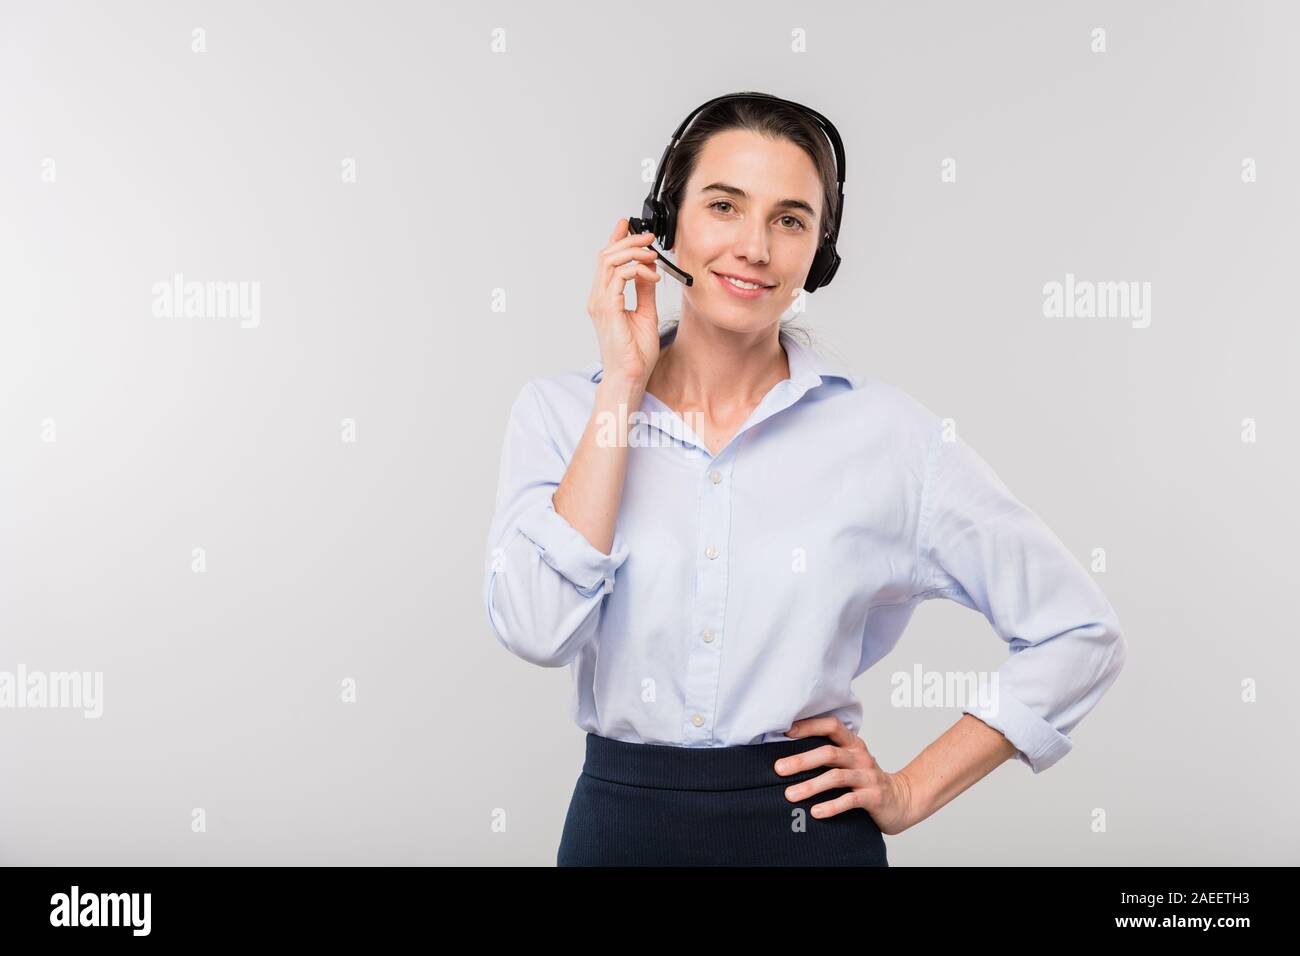 Young smiling businesswoman casque dans la consultation des clients au téléphone Banque D'Images